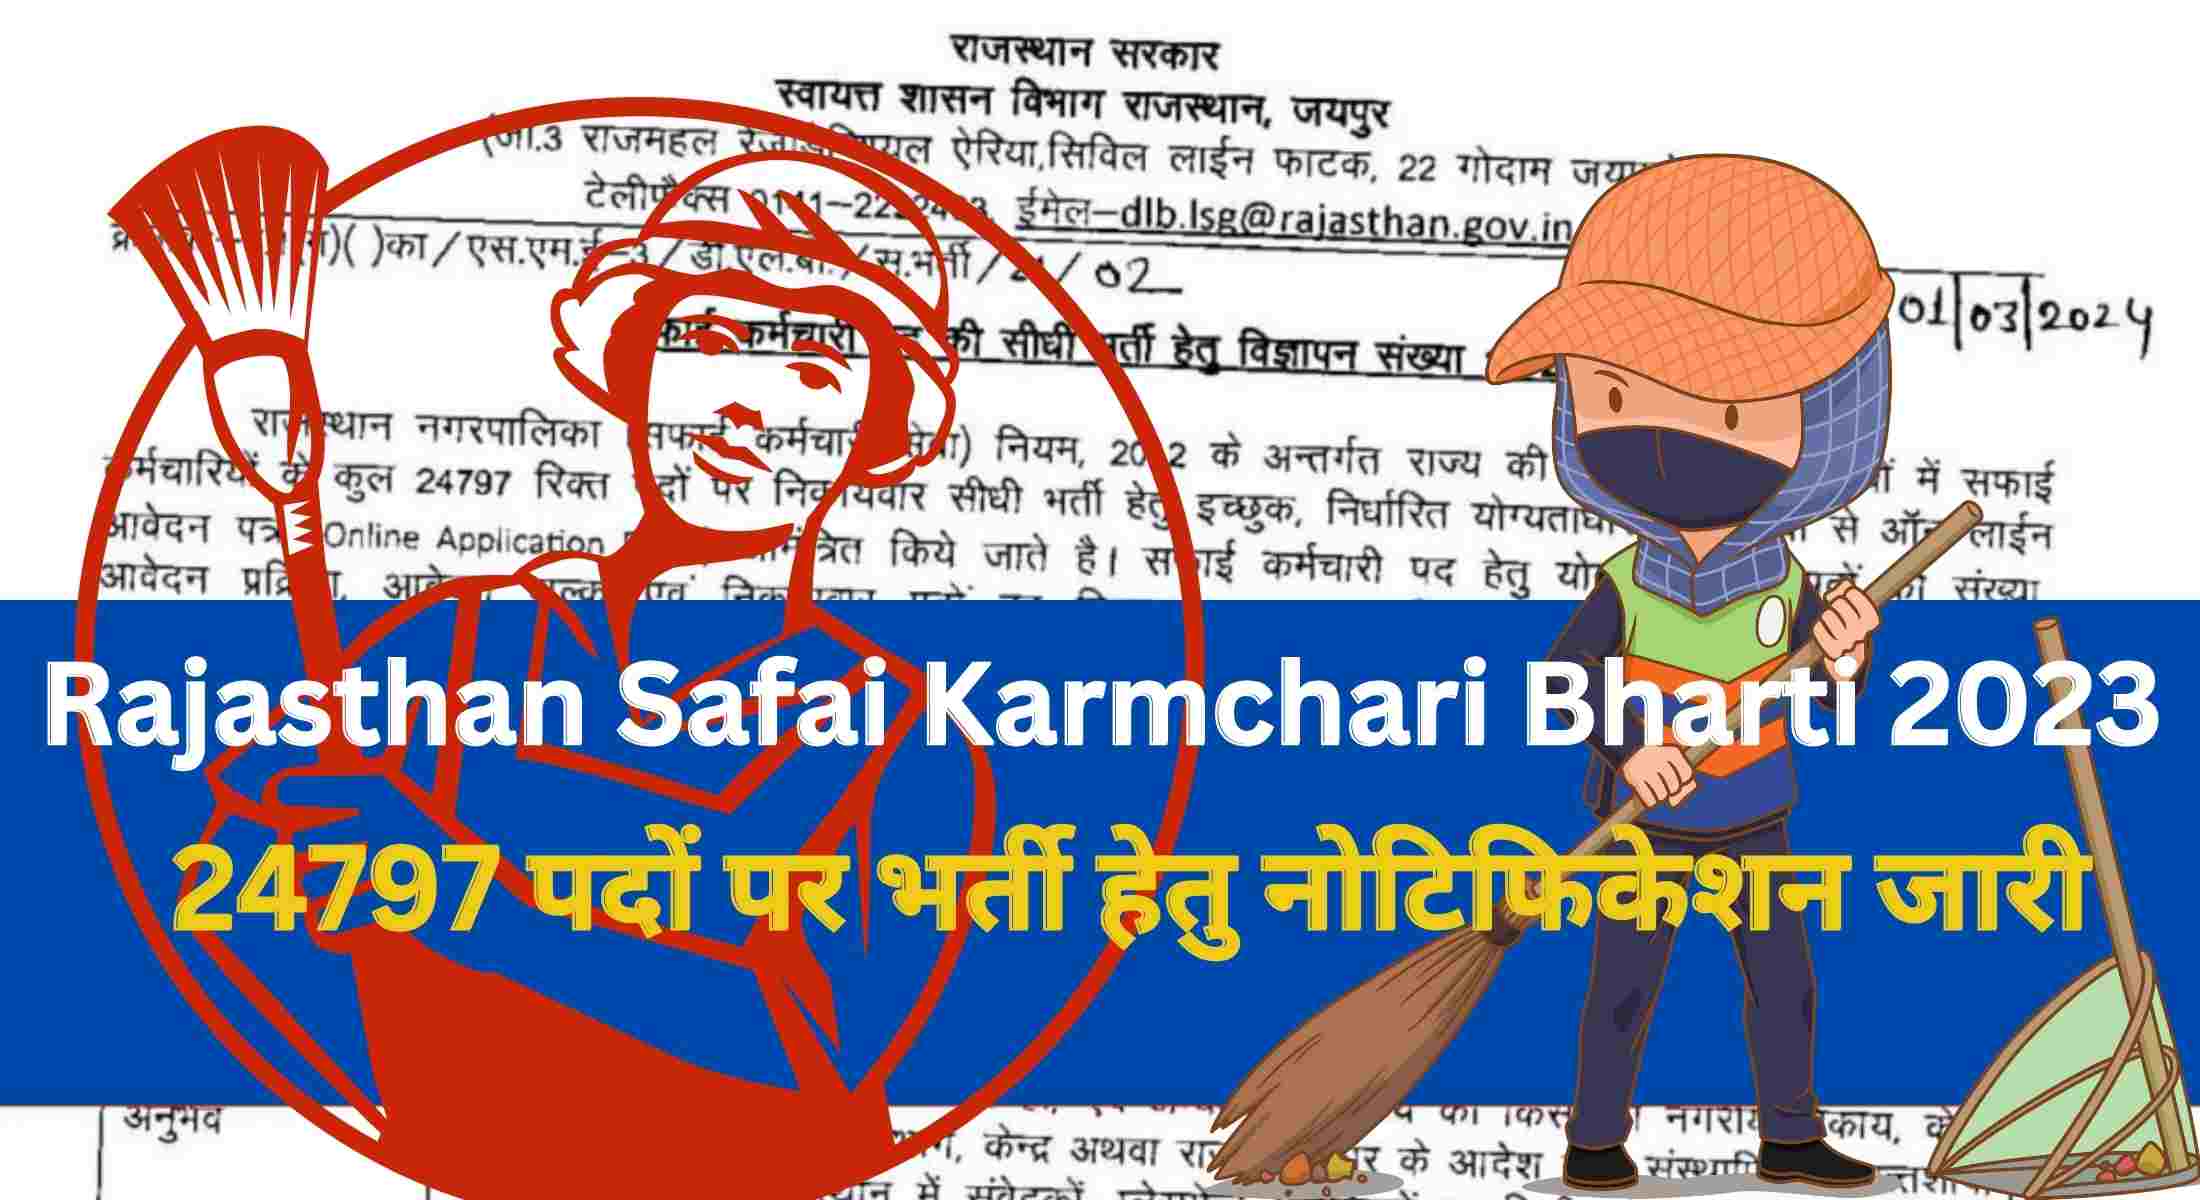 Rajasthan Safai Karmchari Bharti 2023 : राजस्थान सफाई कर्मचारी भर्ती 24797 पदों पर विज्ञापन जारी